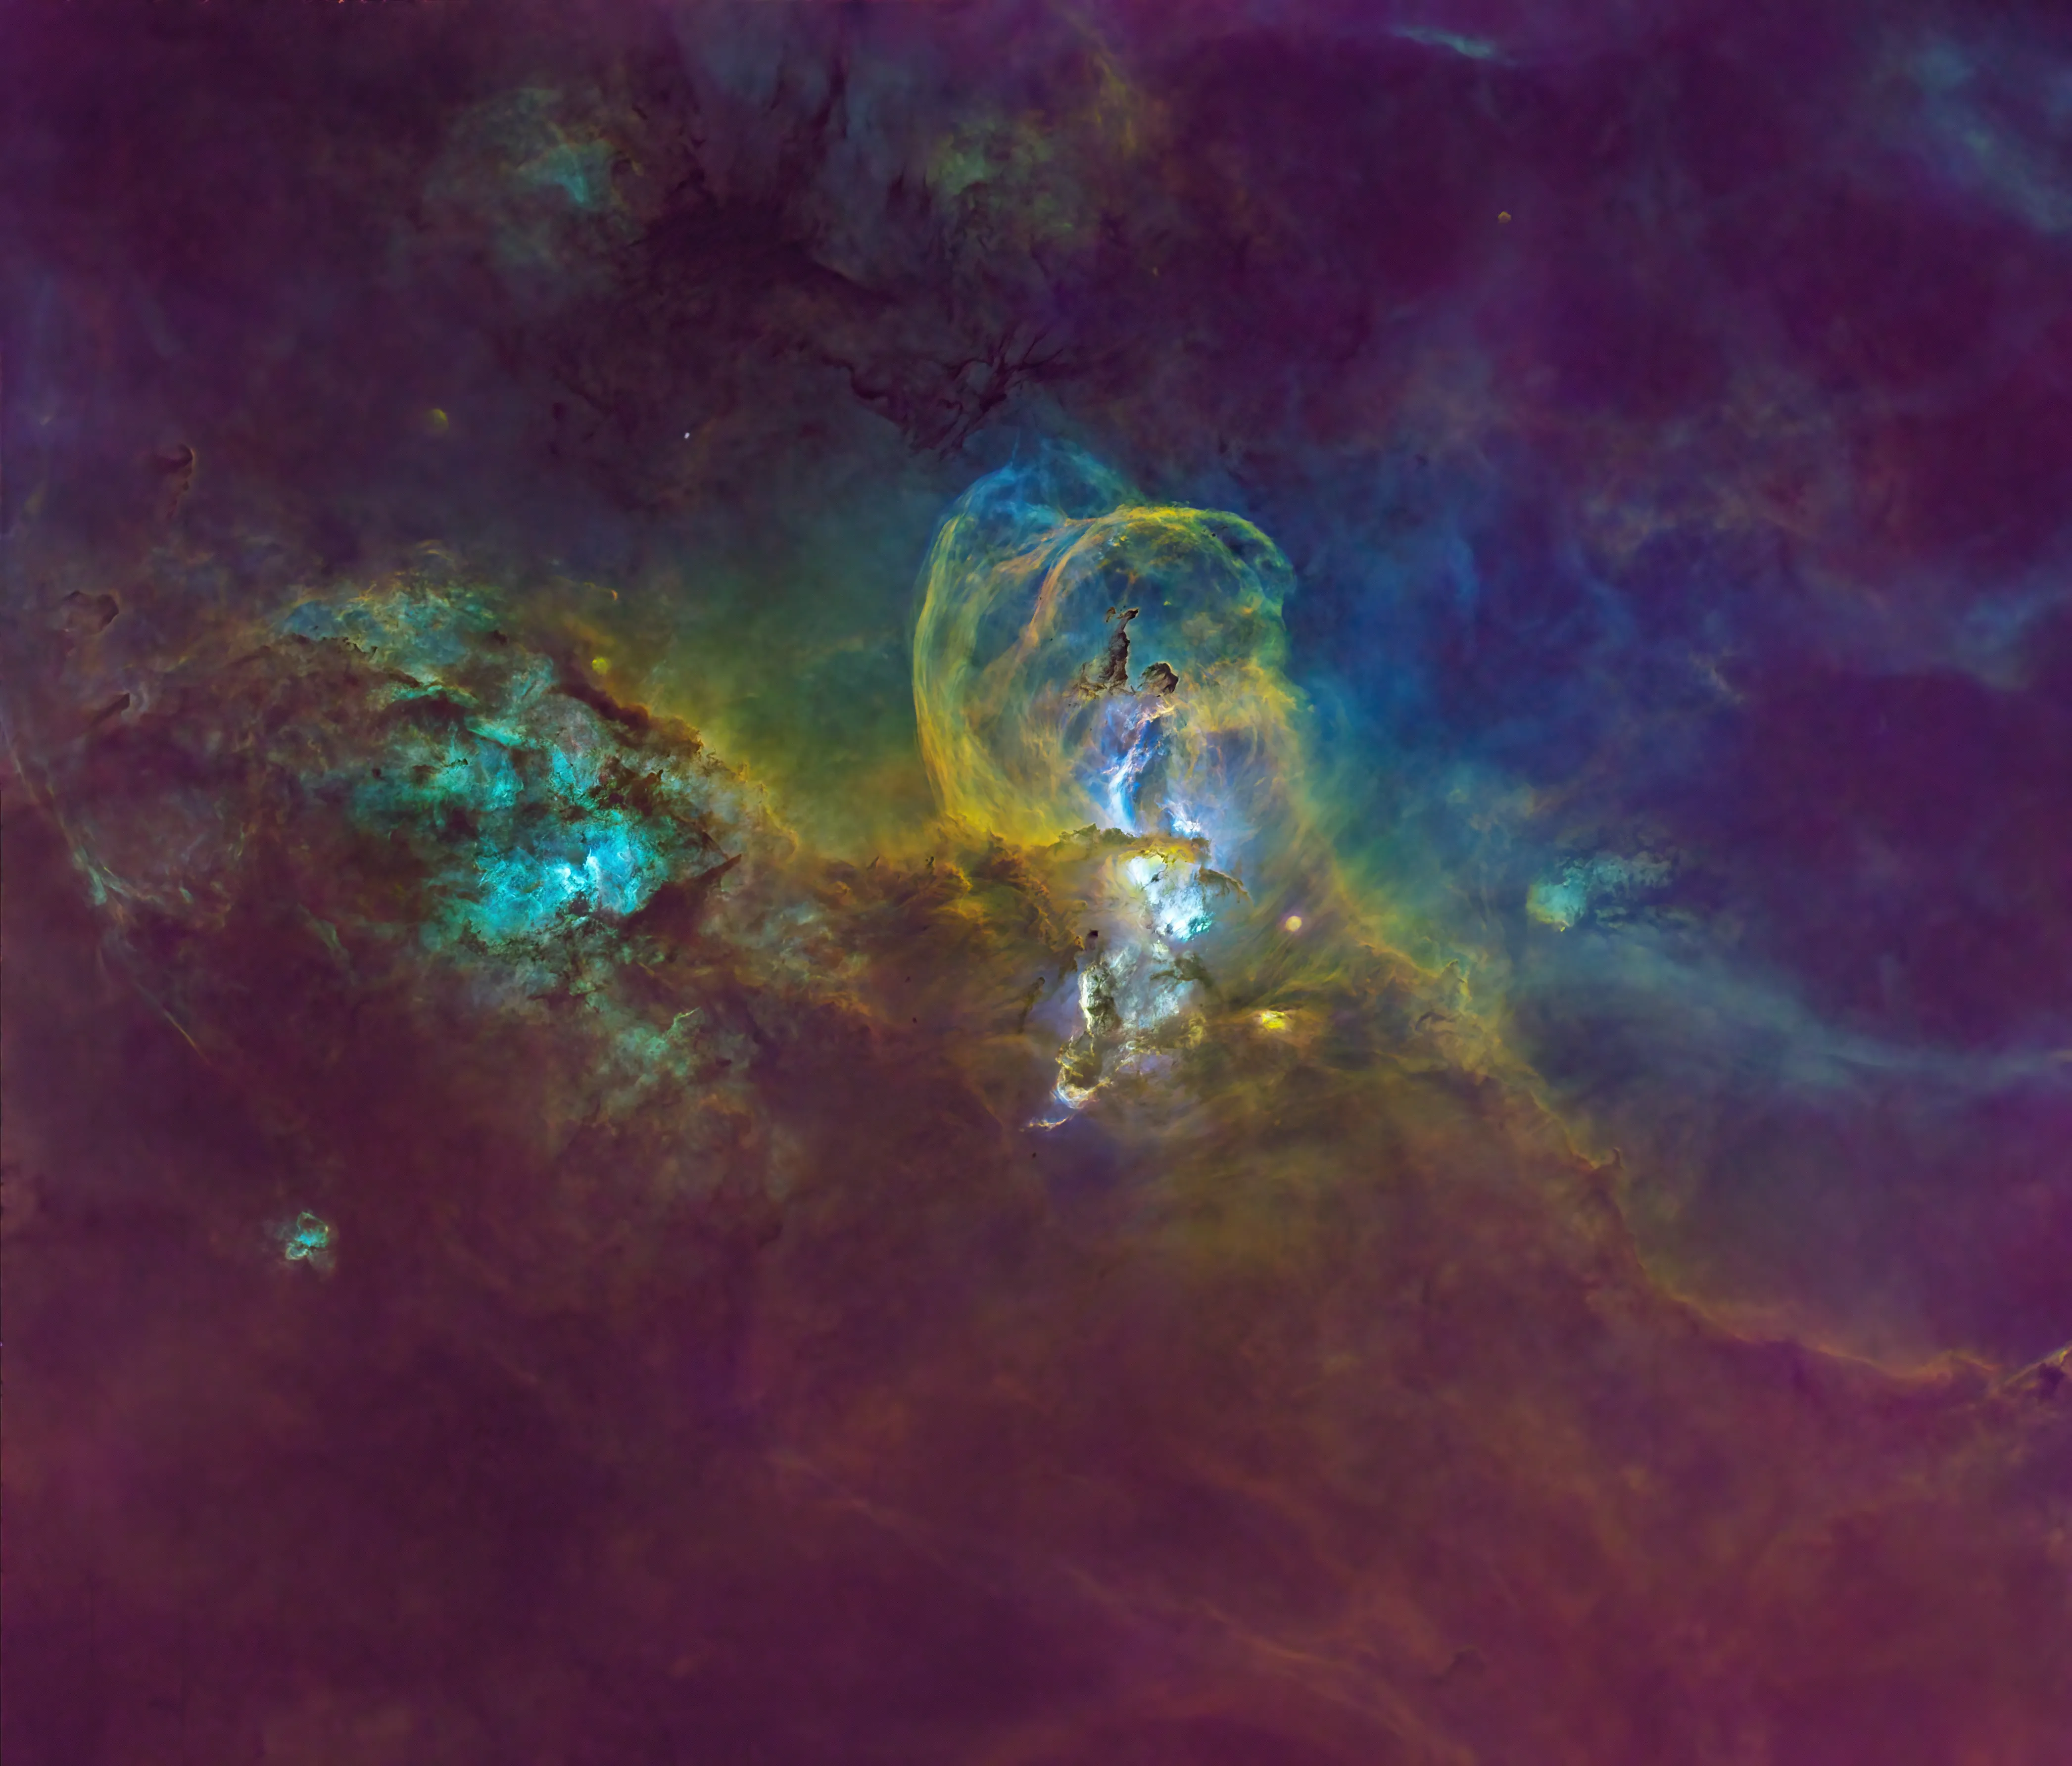 Starless NGC 3576 The Statue of Liberty Nebula by Richard Harris